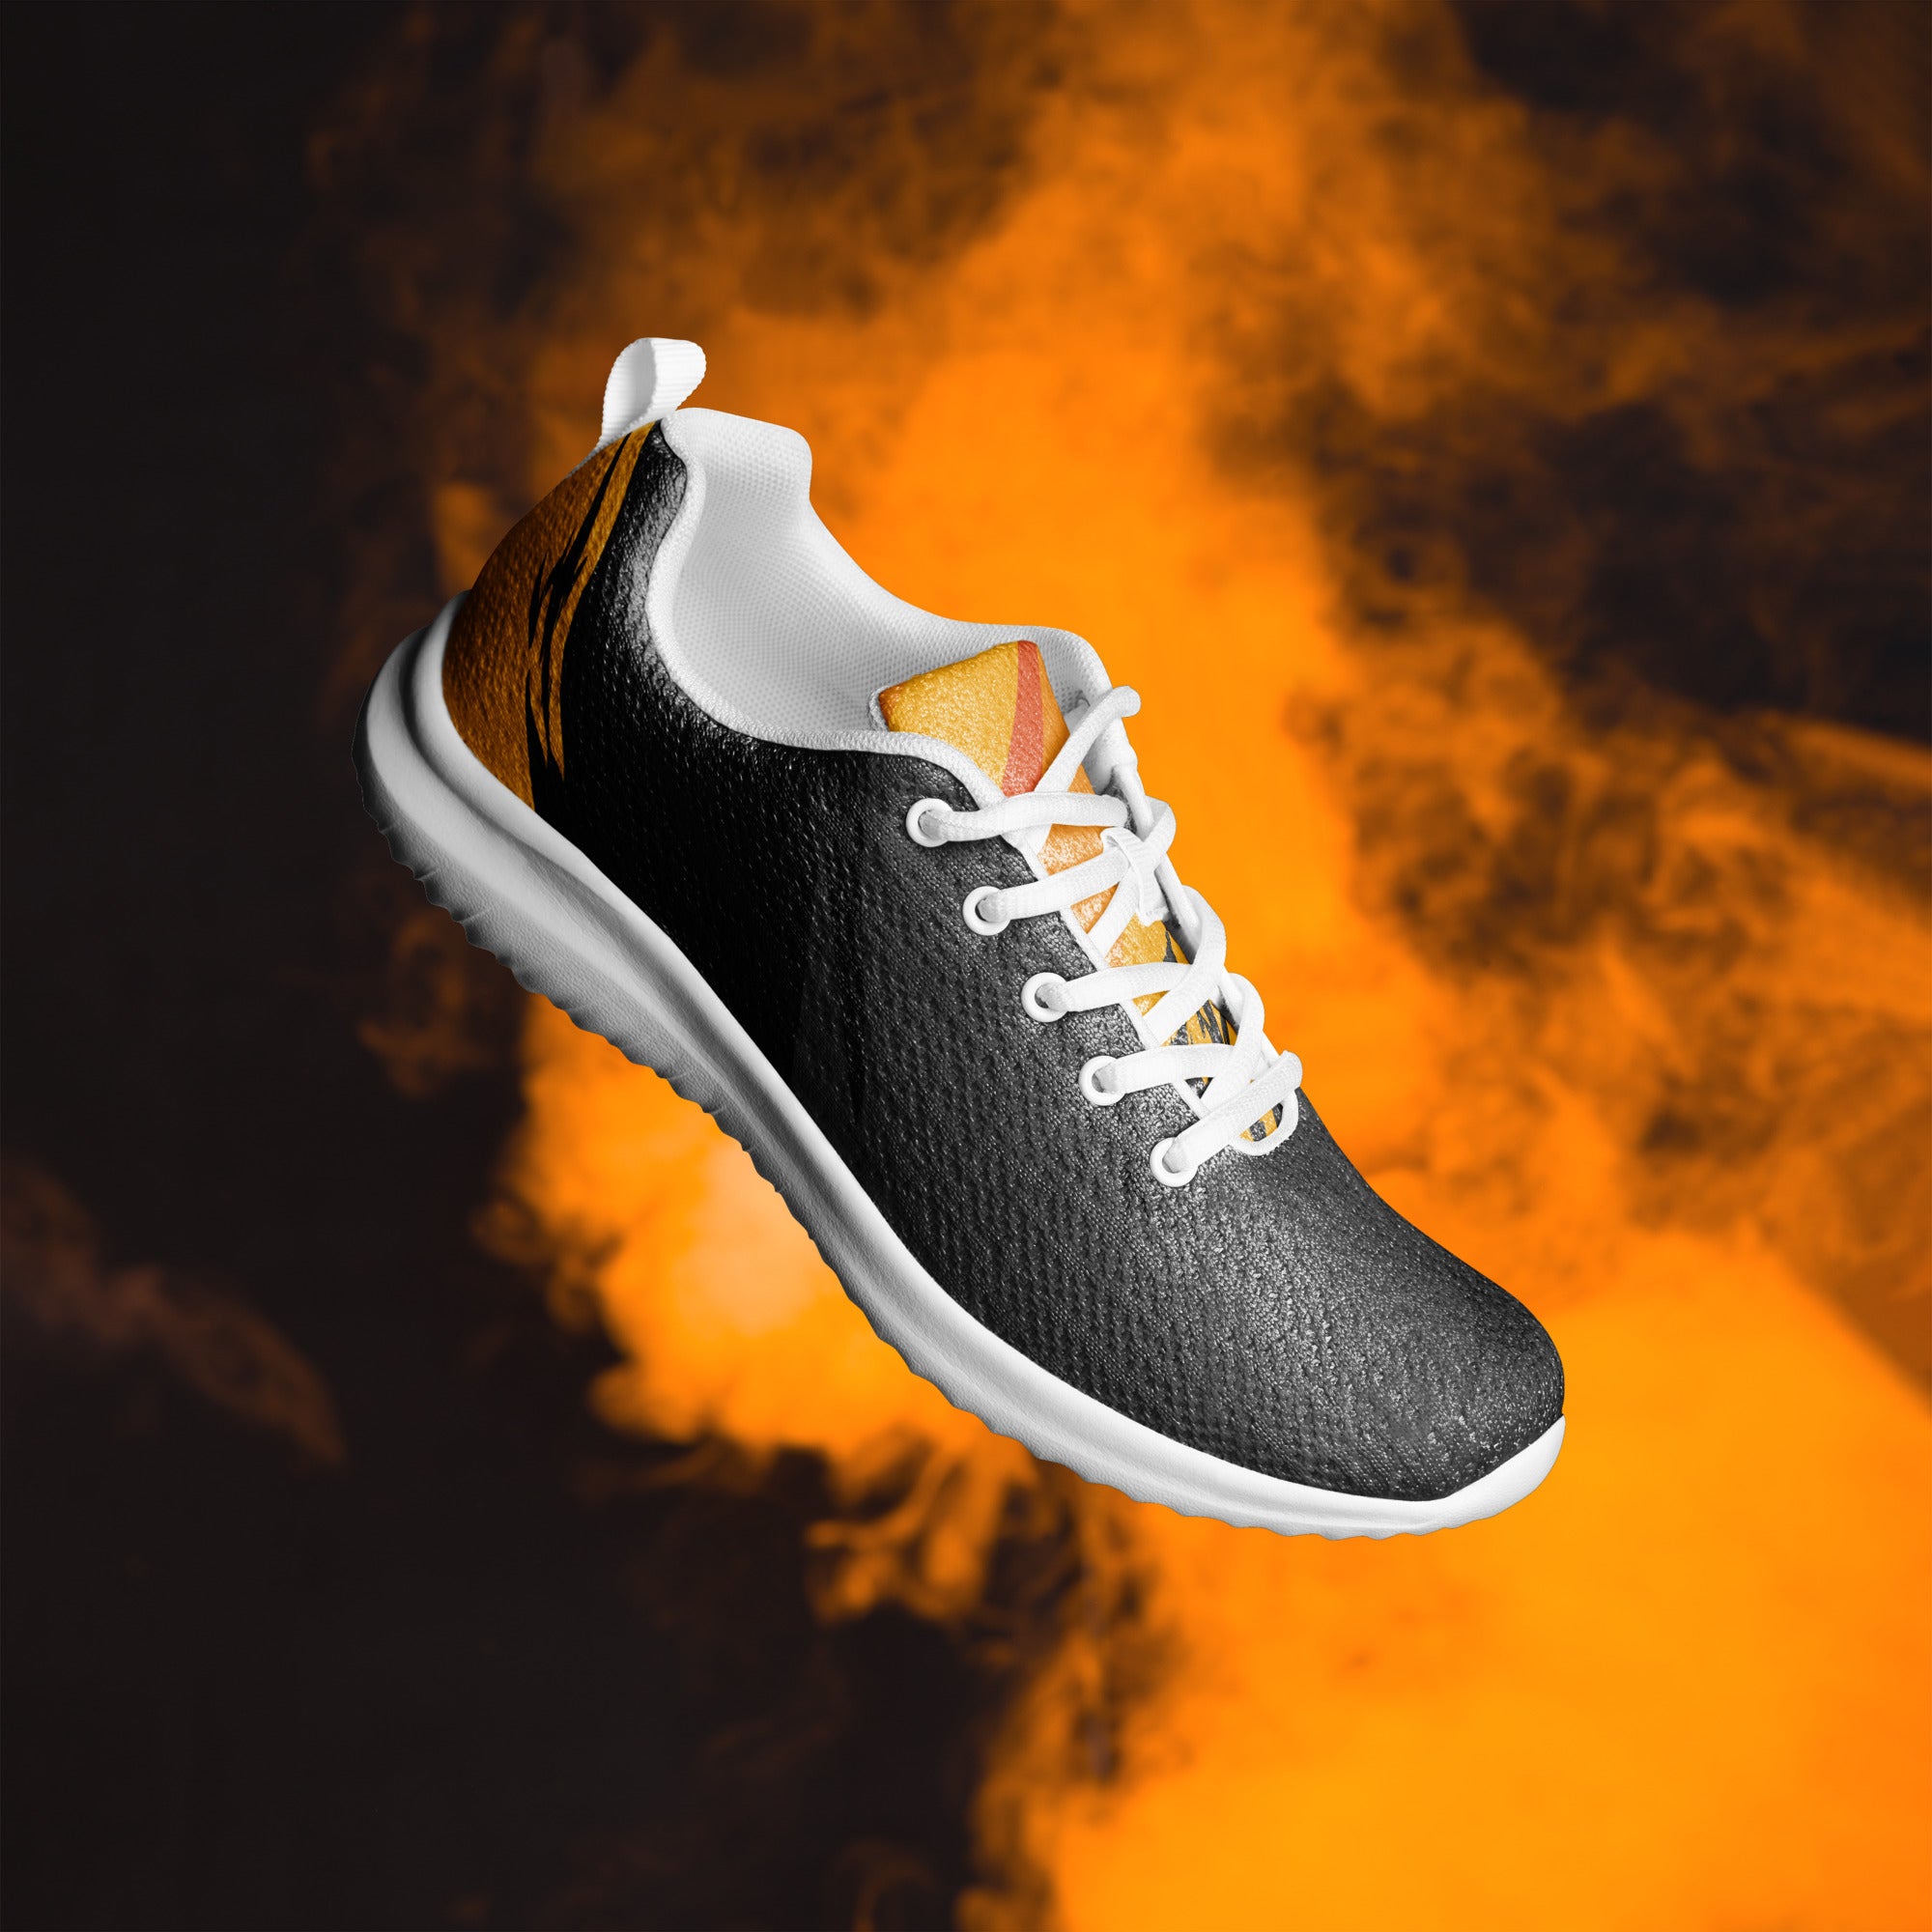 Men's Fire athletic shoes